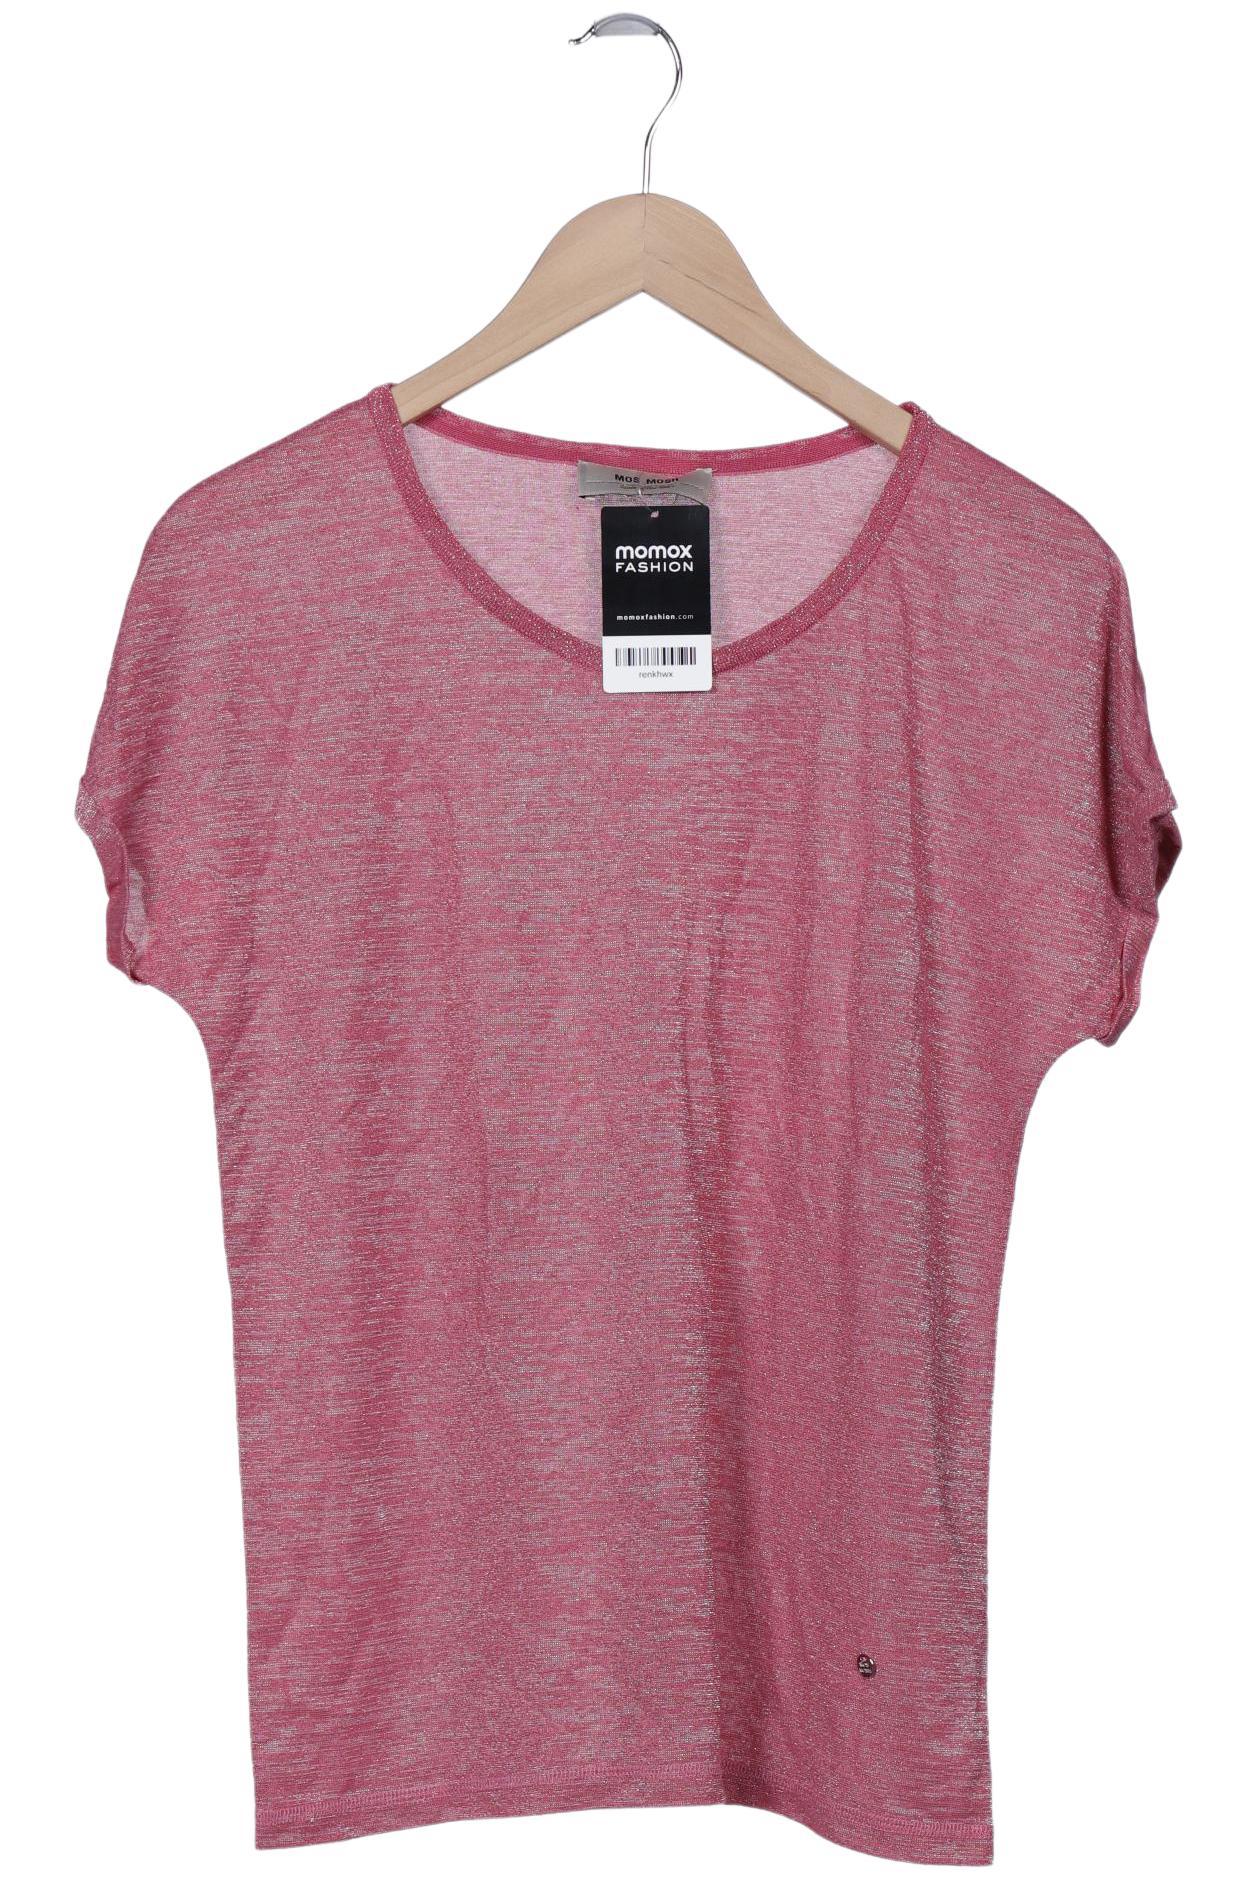 Mos Mosh Damen T-Shirt, pink, Gr. 36 von MOS MOSH